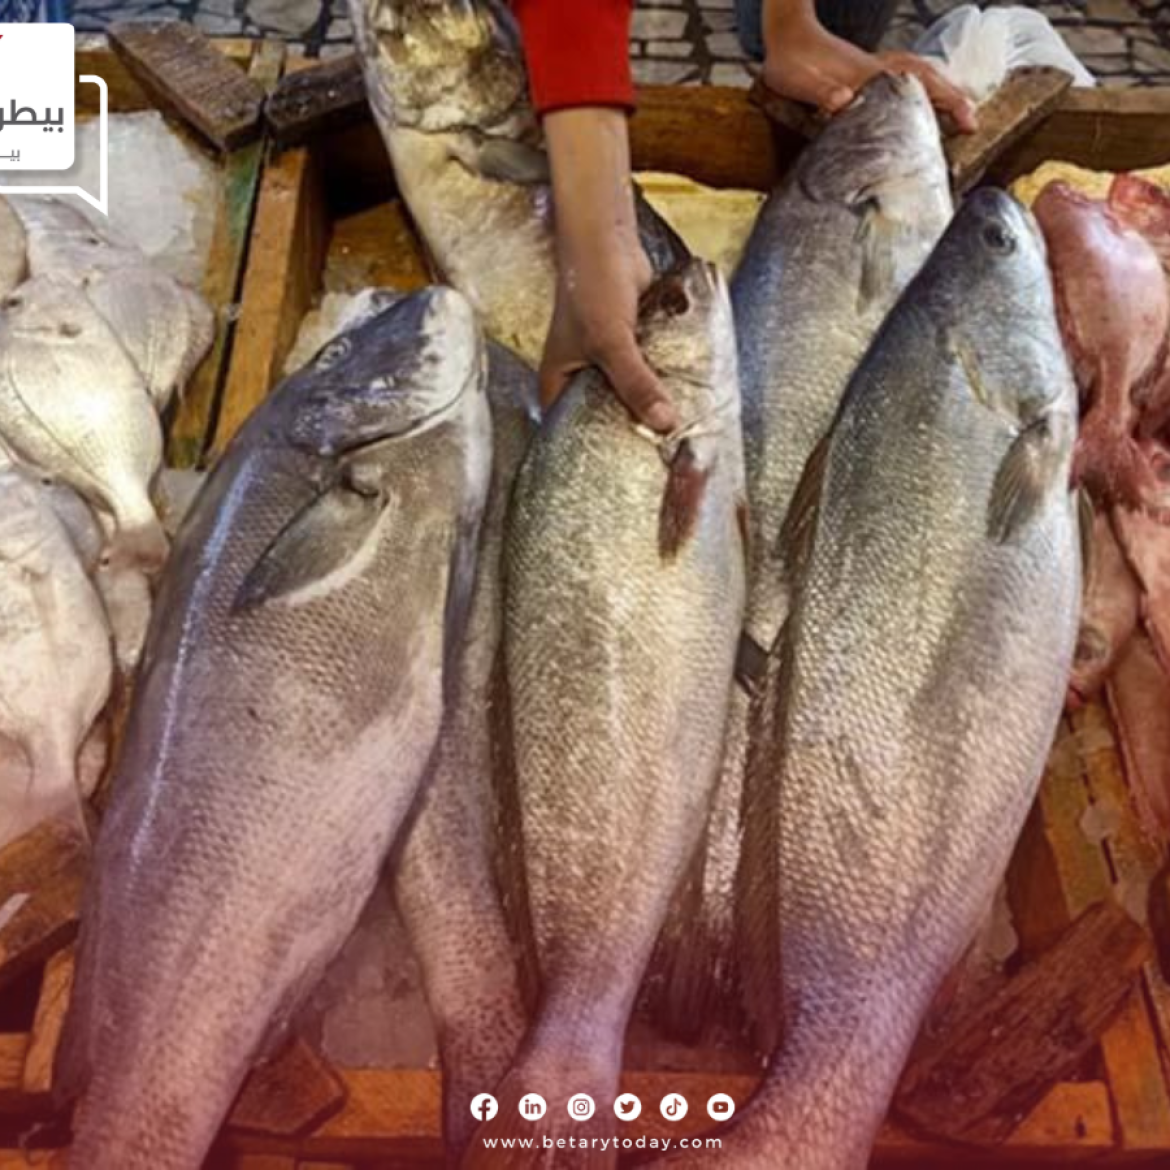 أسعار الأسماك والمأكولات البحرية اليوم الأربعاء 26 يونيو في الأسواق